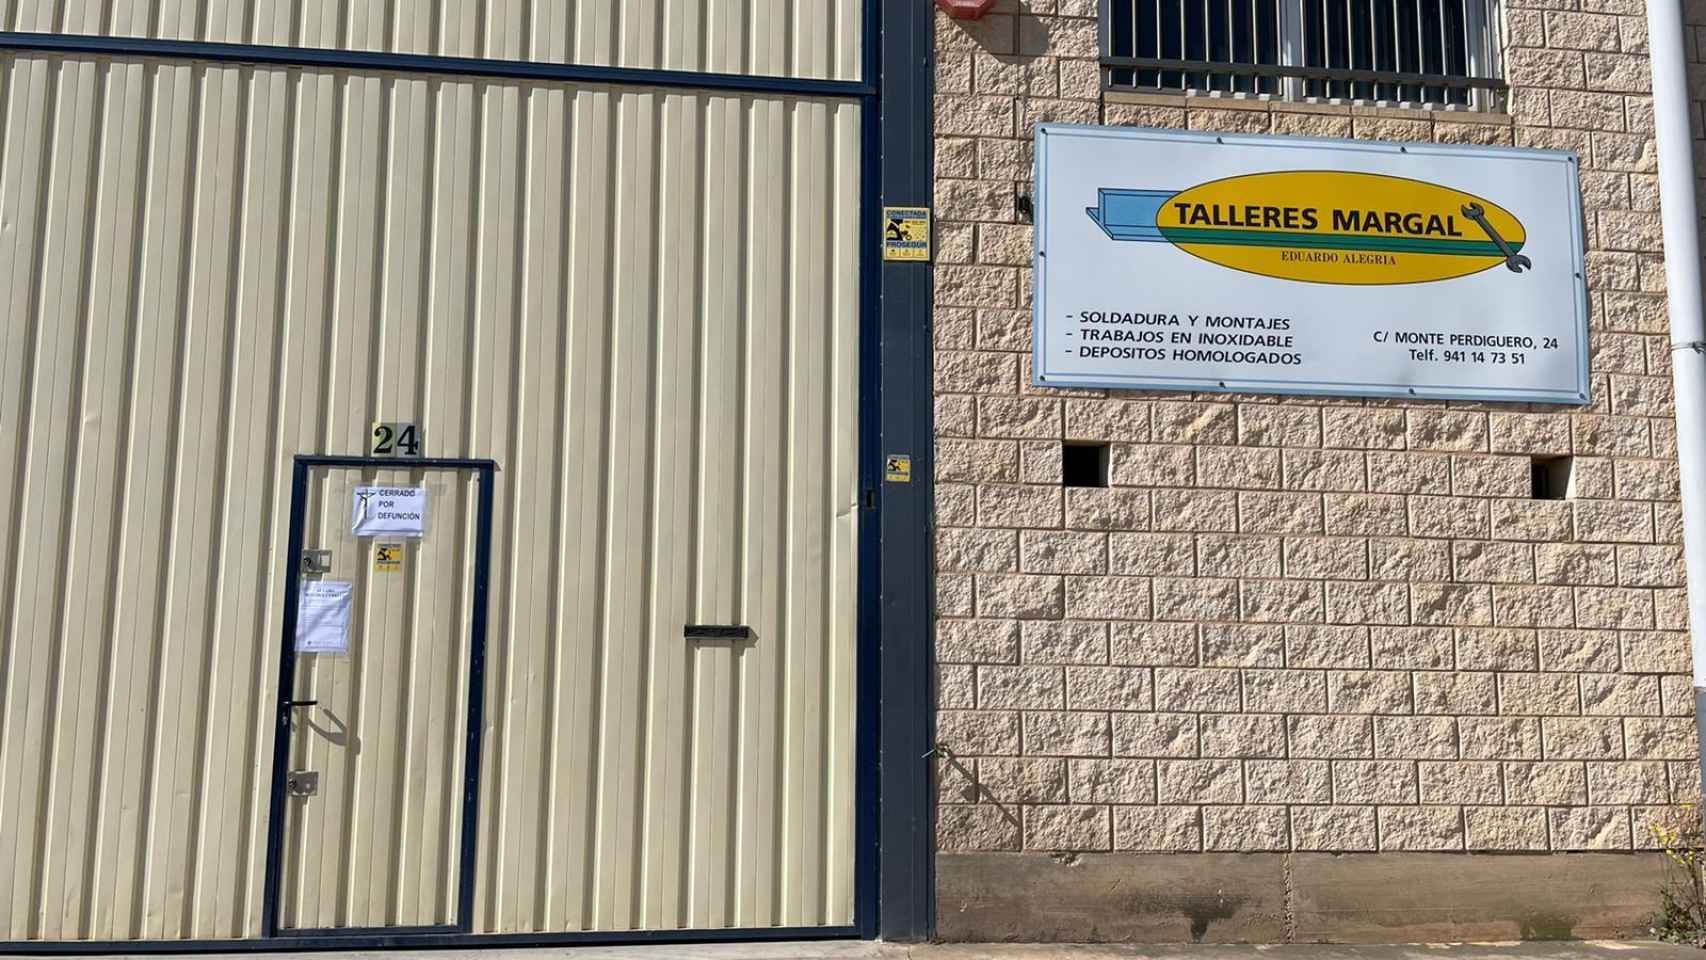 La sede de Talleres Margal, la empresa donde trabajaba Álvaro Alegría y el otro trabajador fallecido.